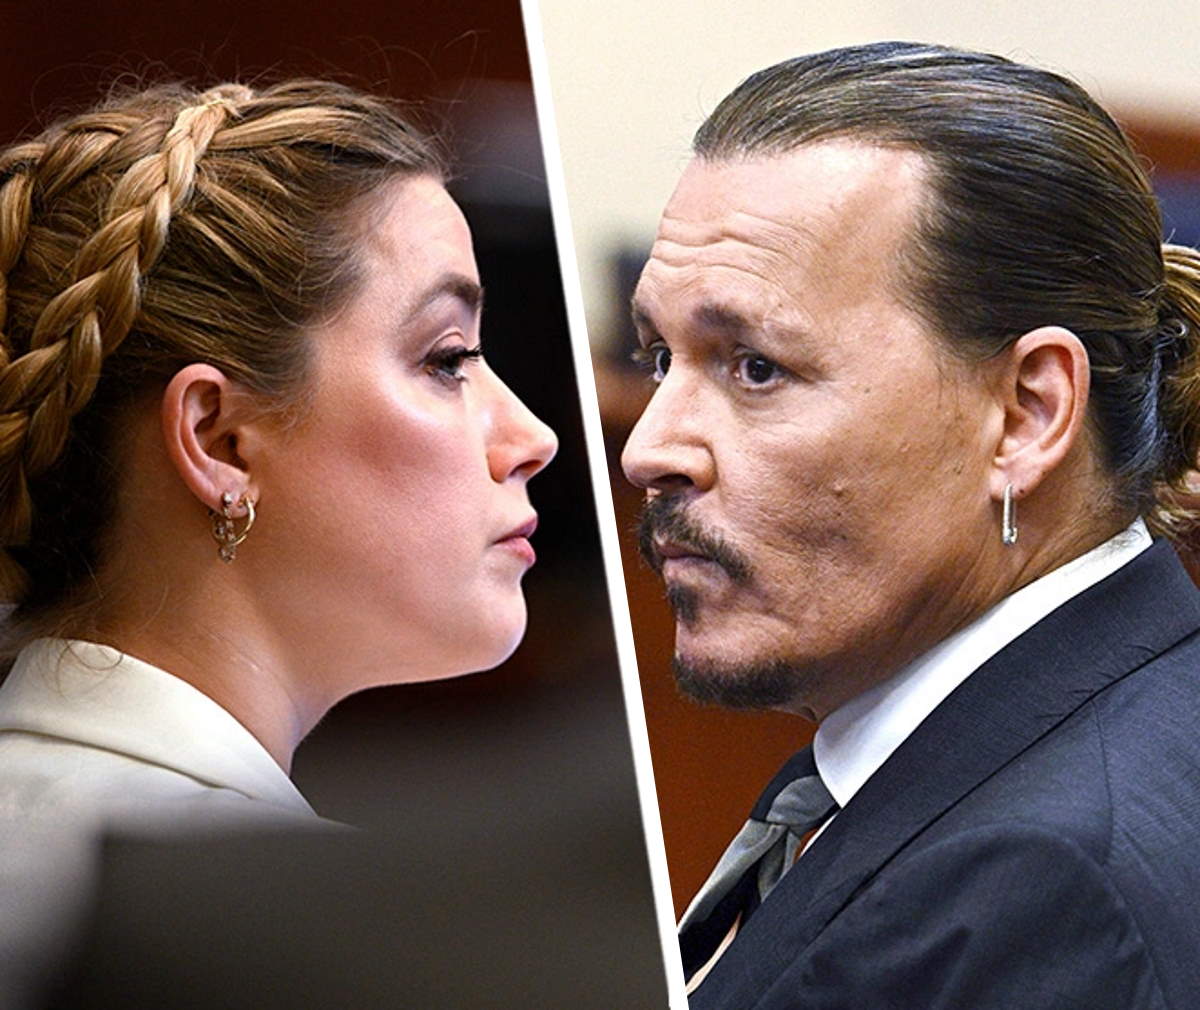 Un trbunale americano ha stabilito che Amber Heard ha diffamato Johnny Depp: vicenda conclusa?